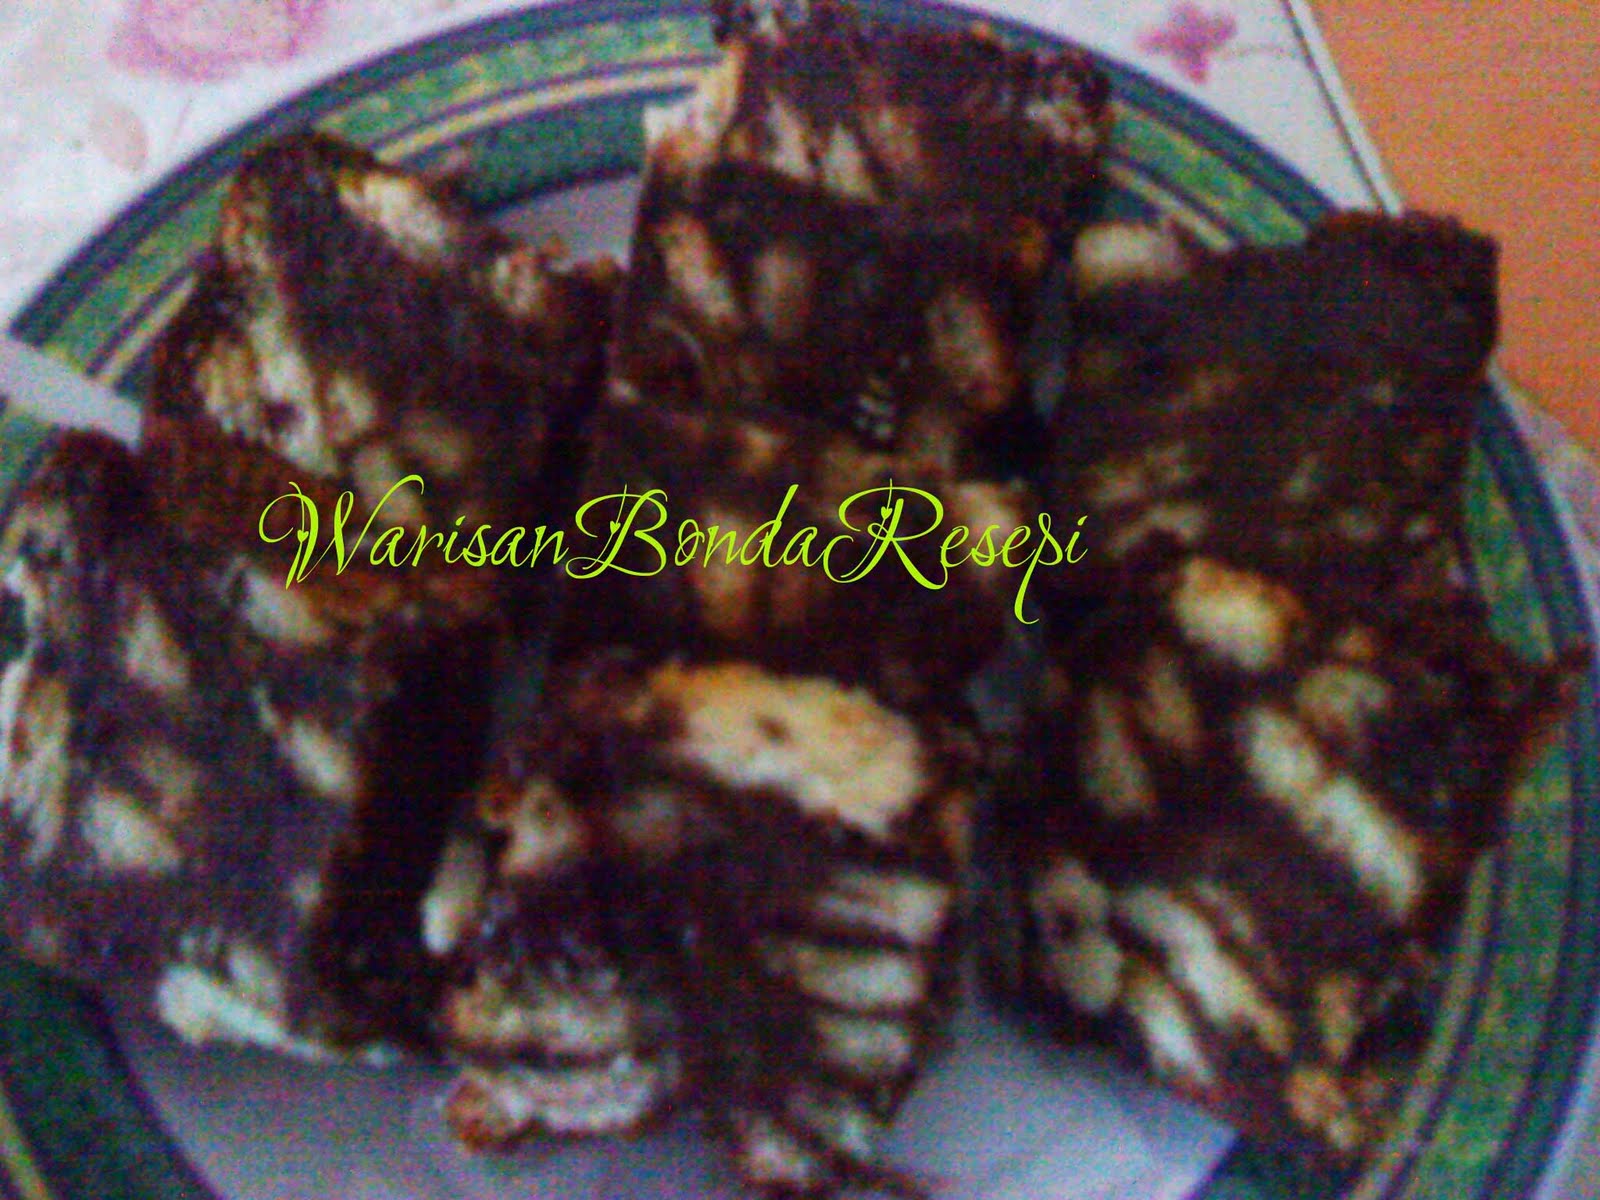 Warisan Bonda Resepi: Kek Batik